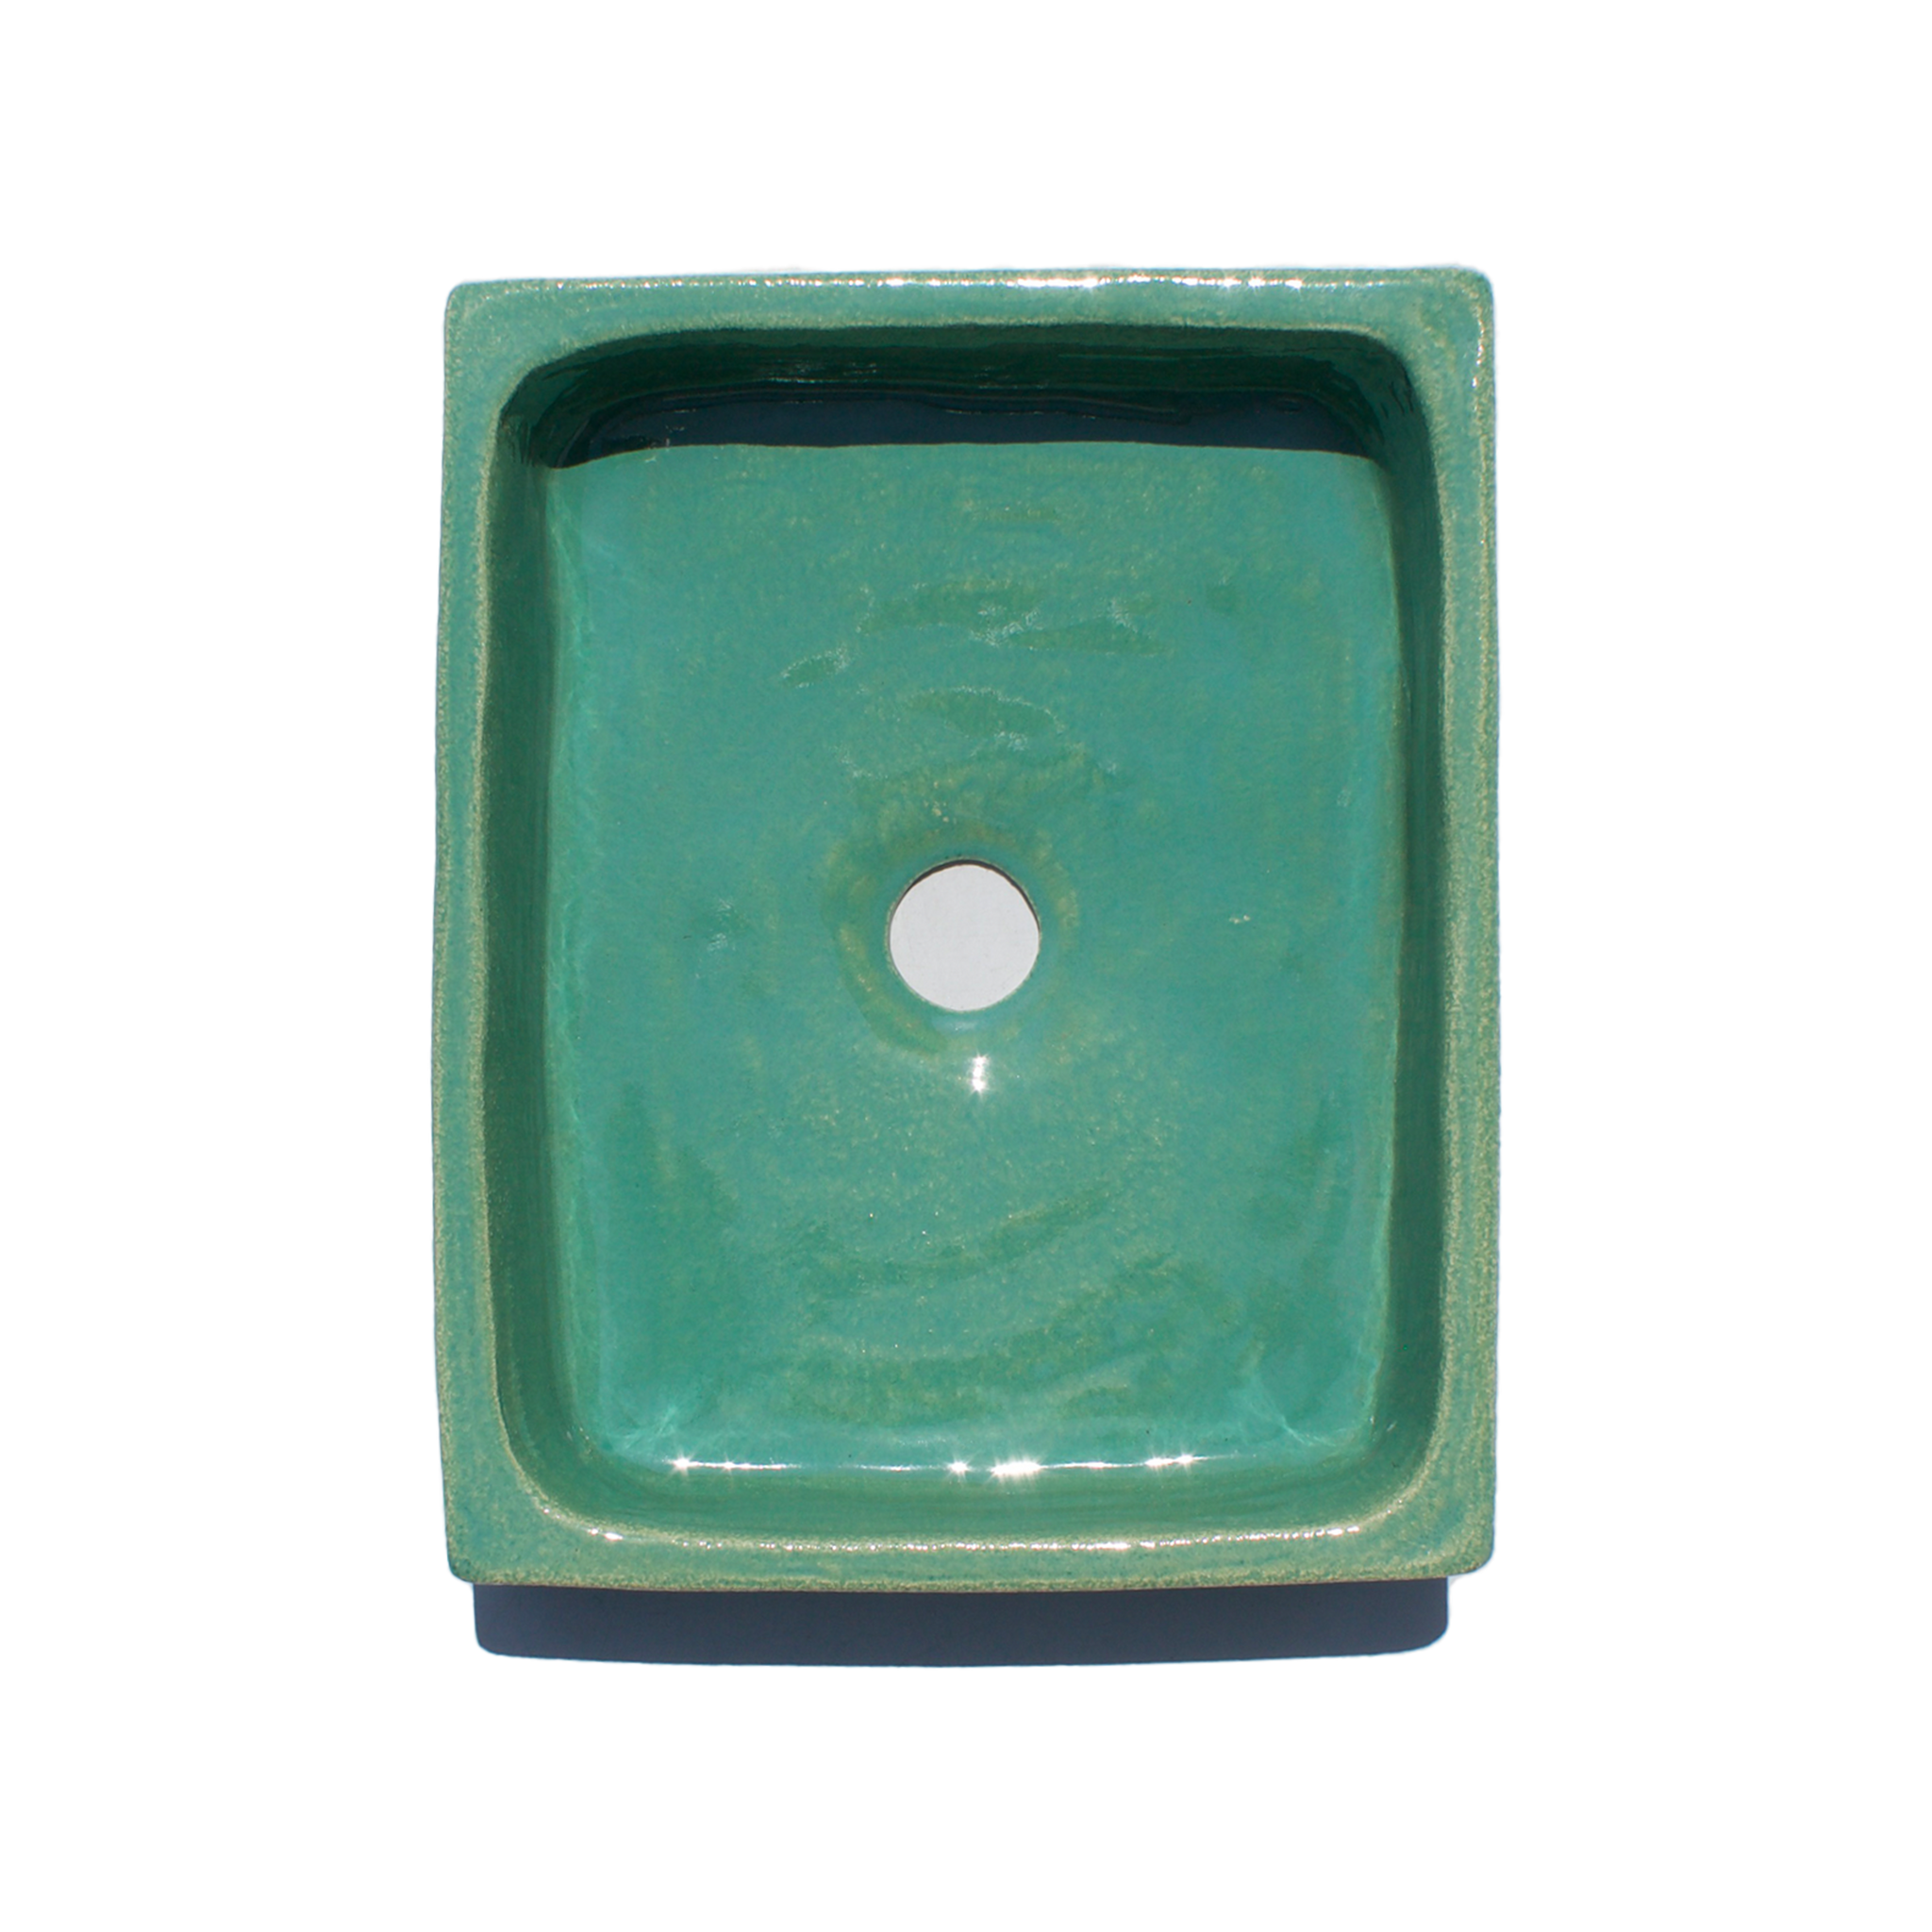 Santorini Green Glazed Terracotta Sink